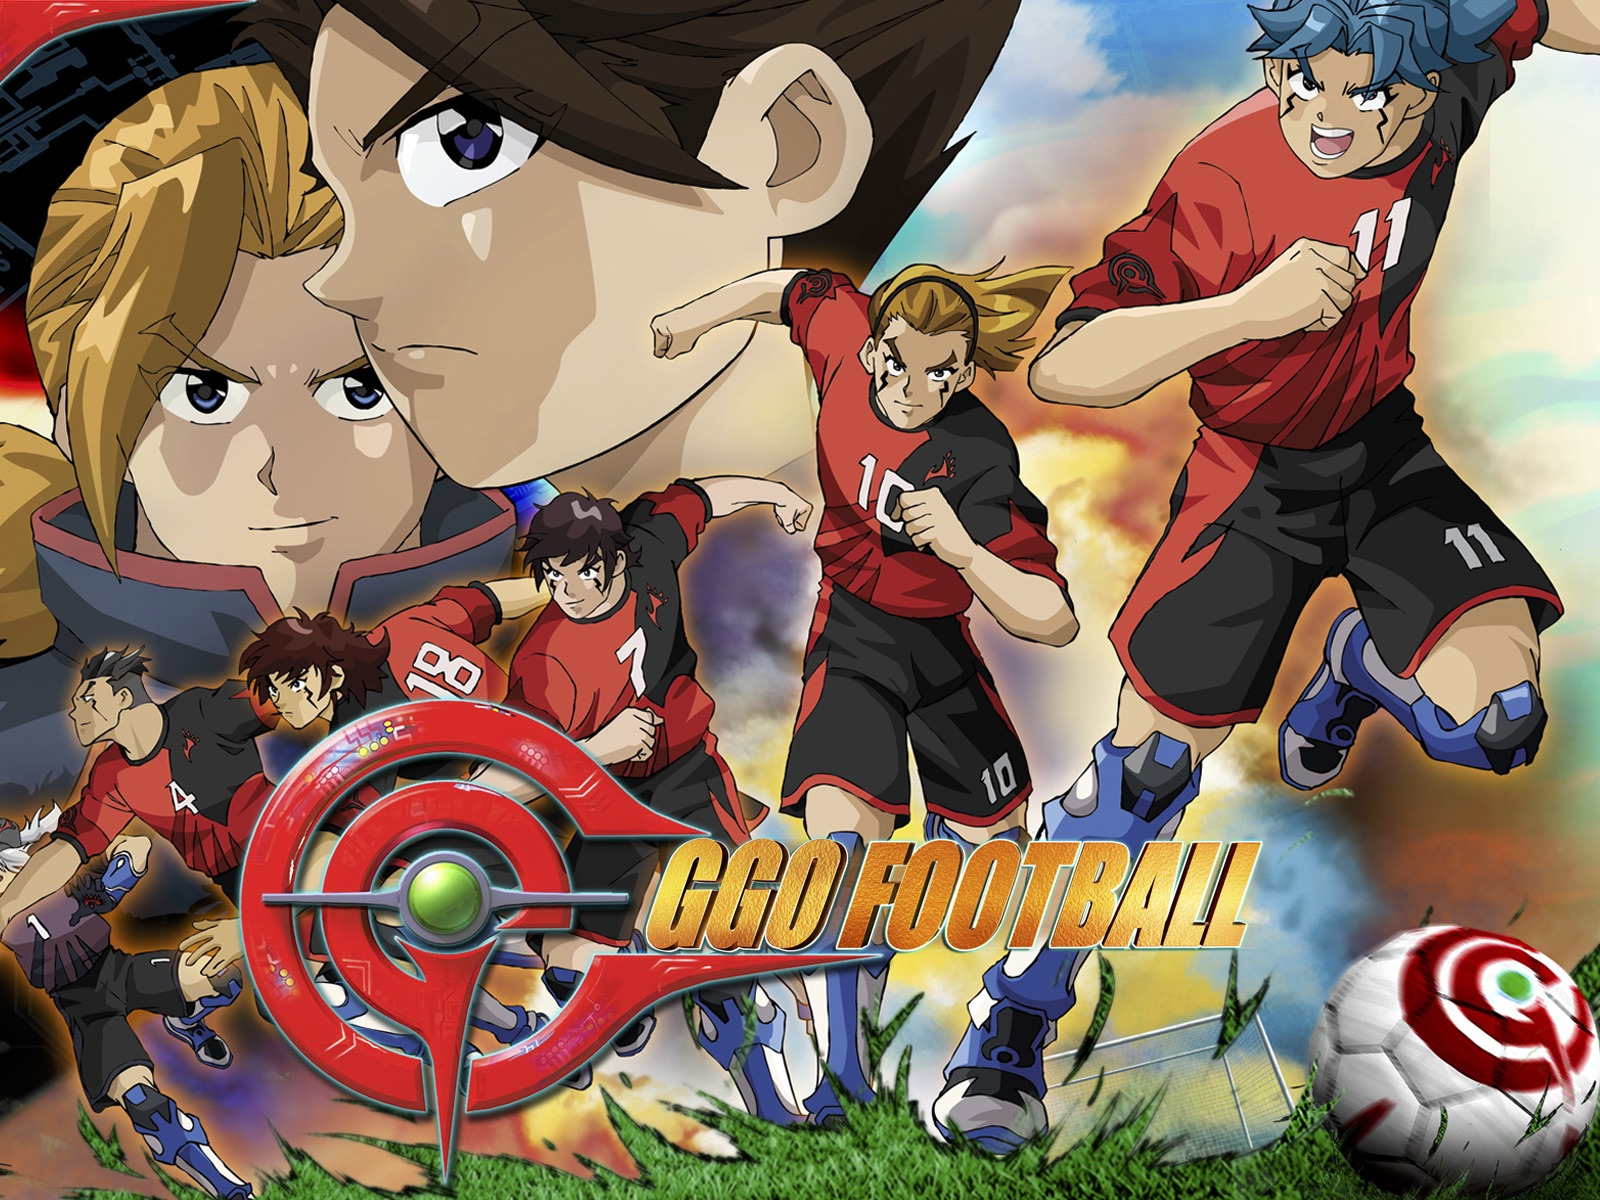 El anime GGO Football gratis y legal en la plataforma VIX | Anime y Manga  noticias online [Mision Tokyo]